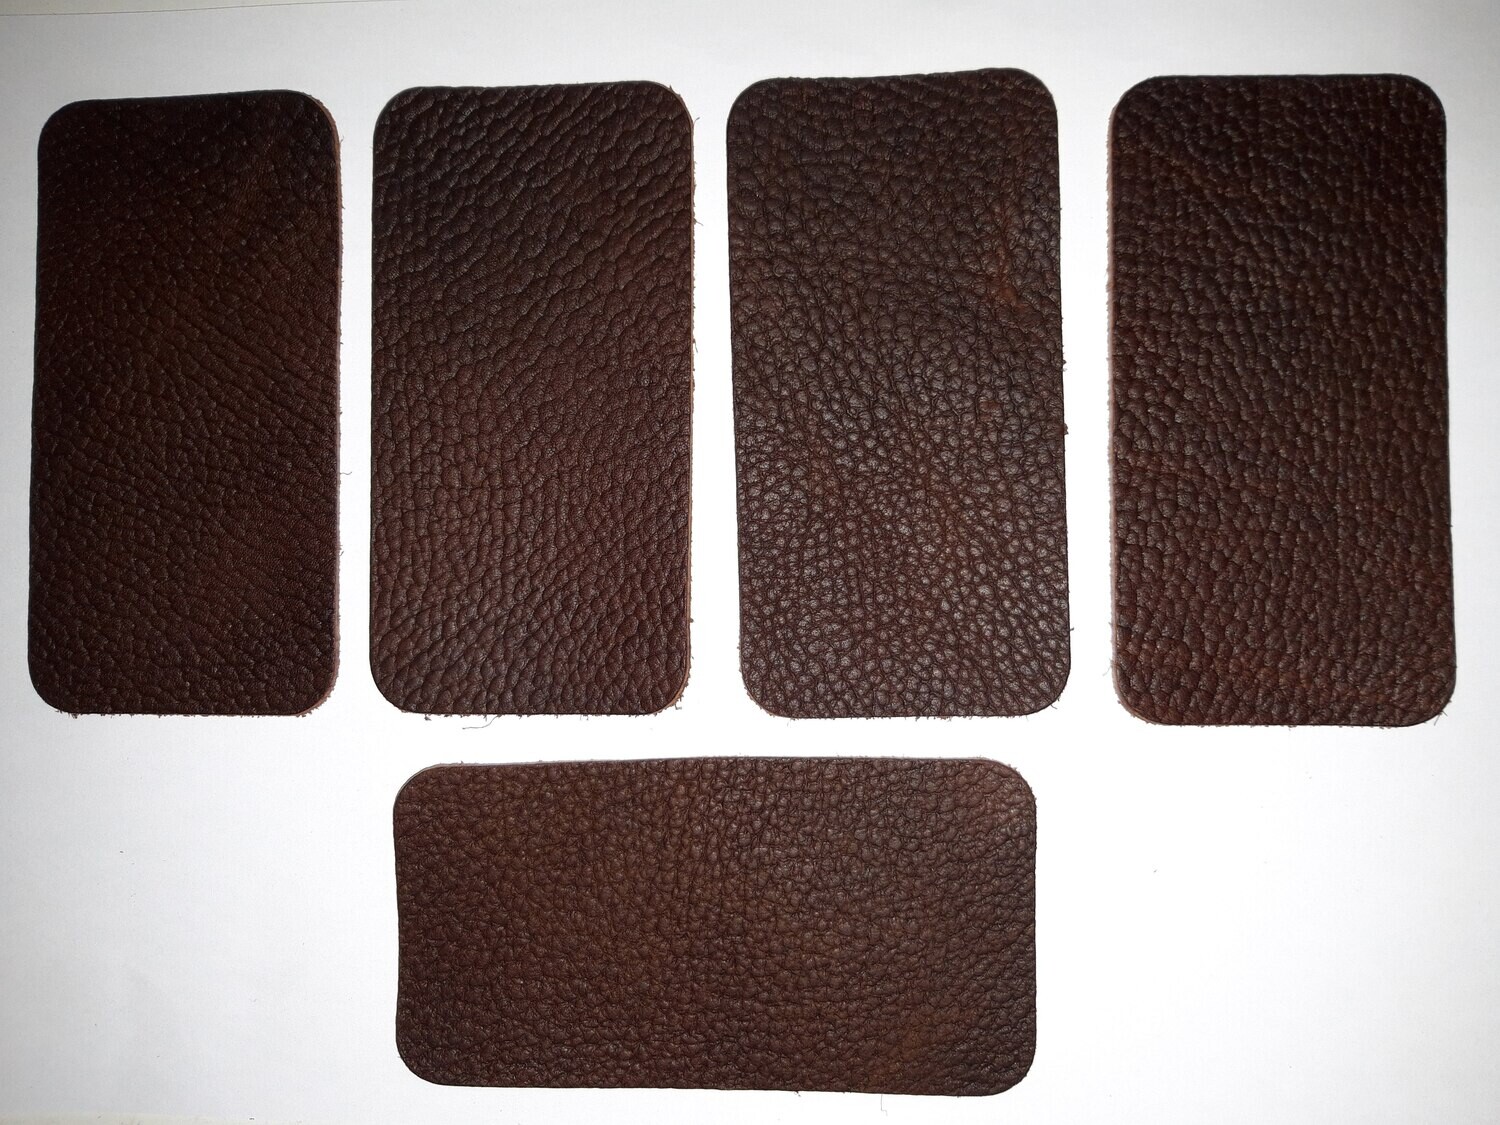 Leather pieces color brown 11,60 x 6 cm